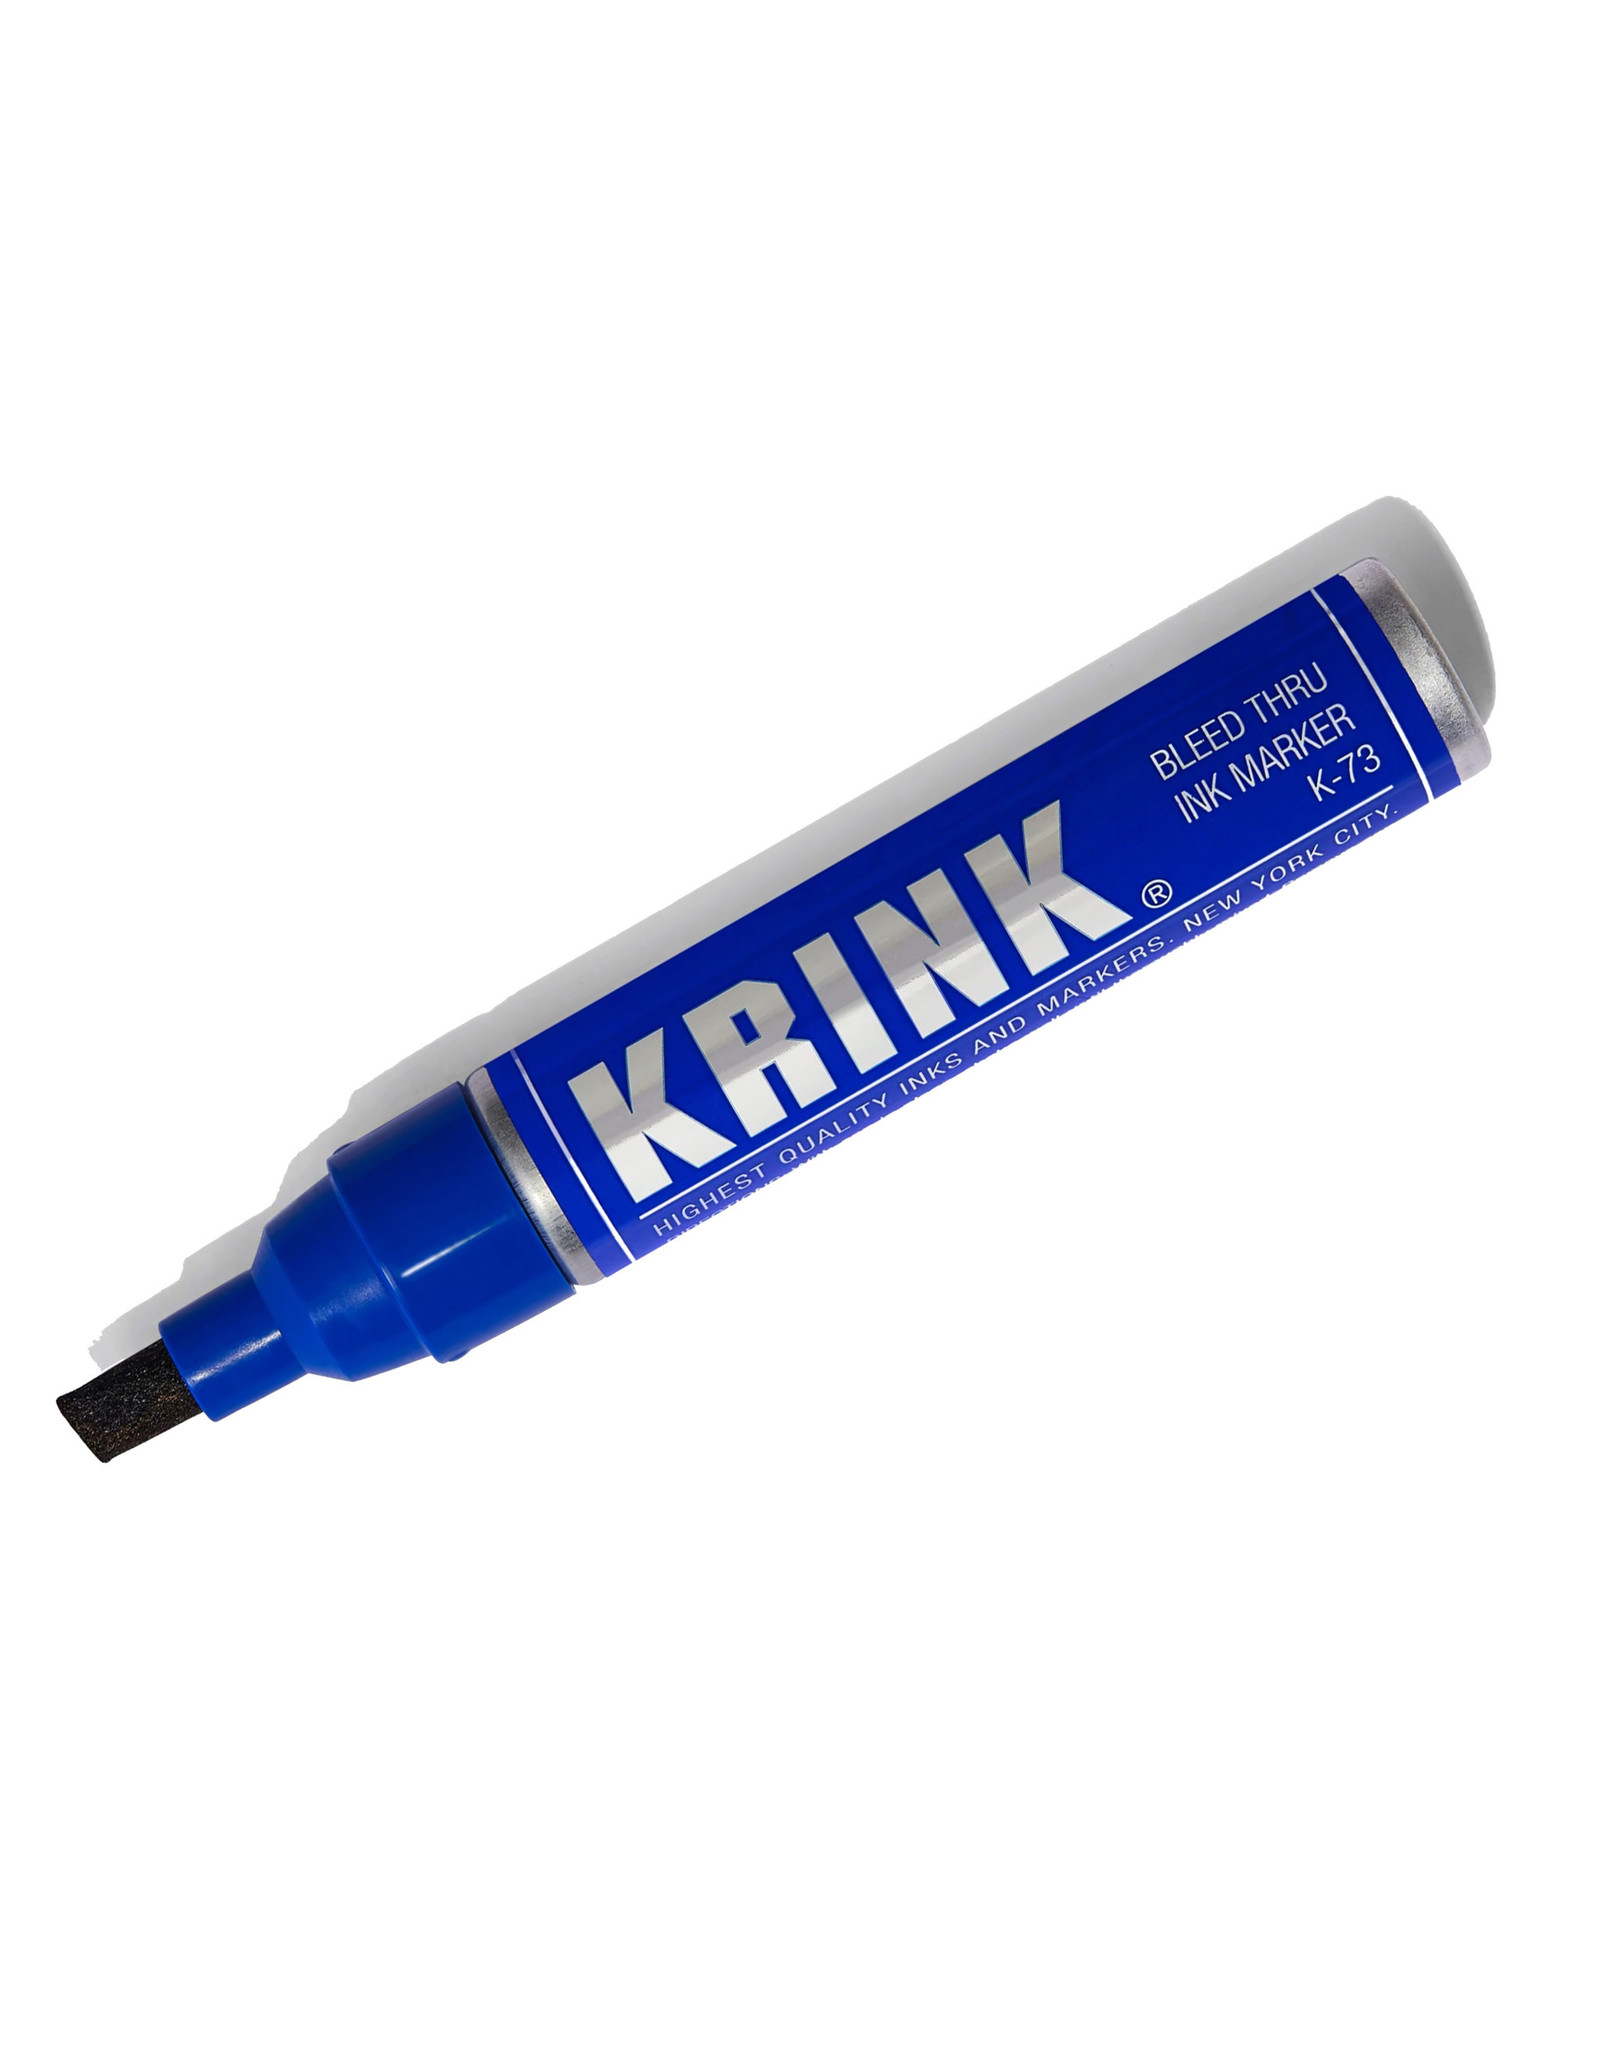 Krink Krink K-73 "Bleed Thru" Alcohol Ink Marker, Blue